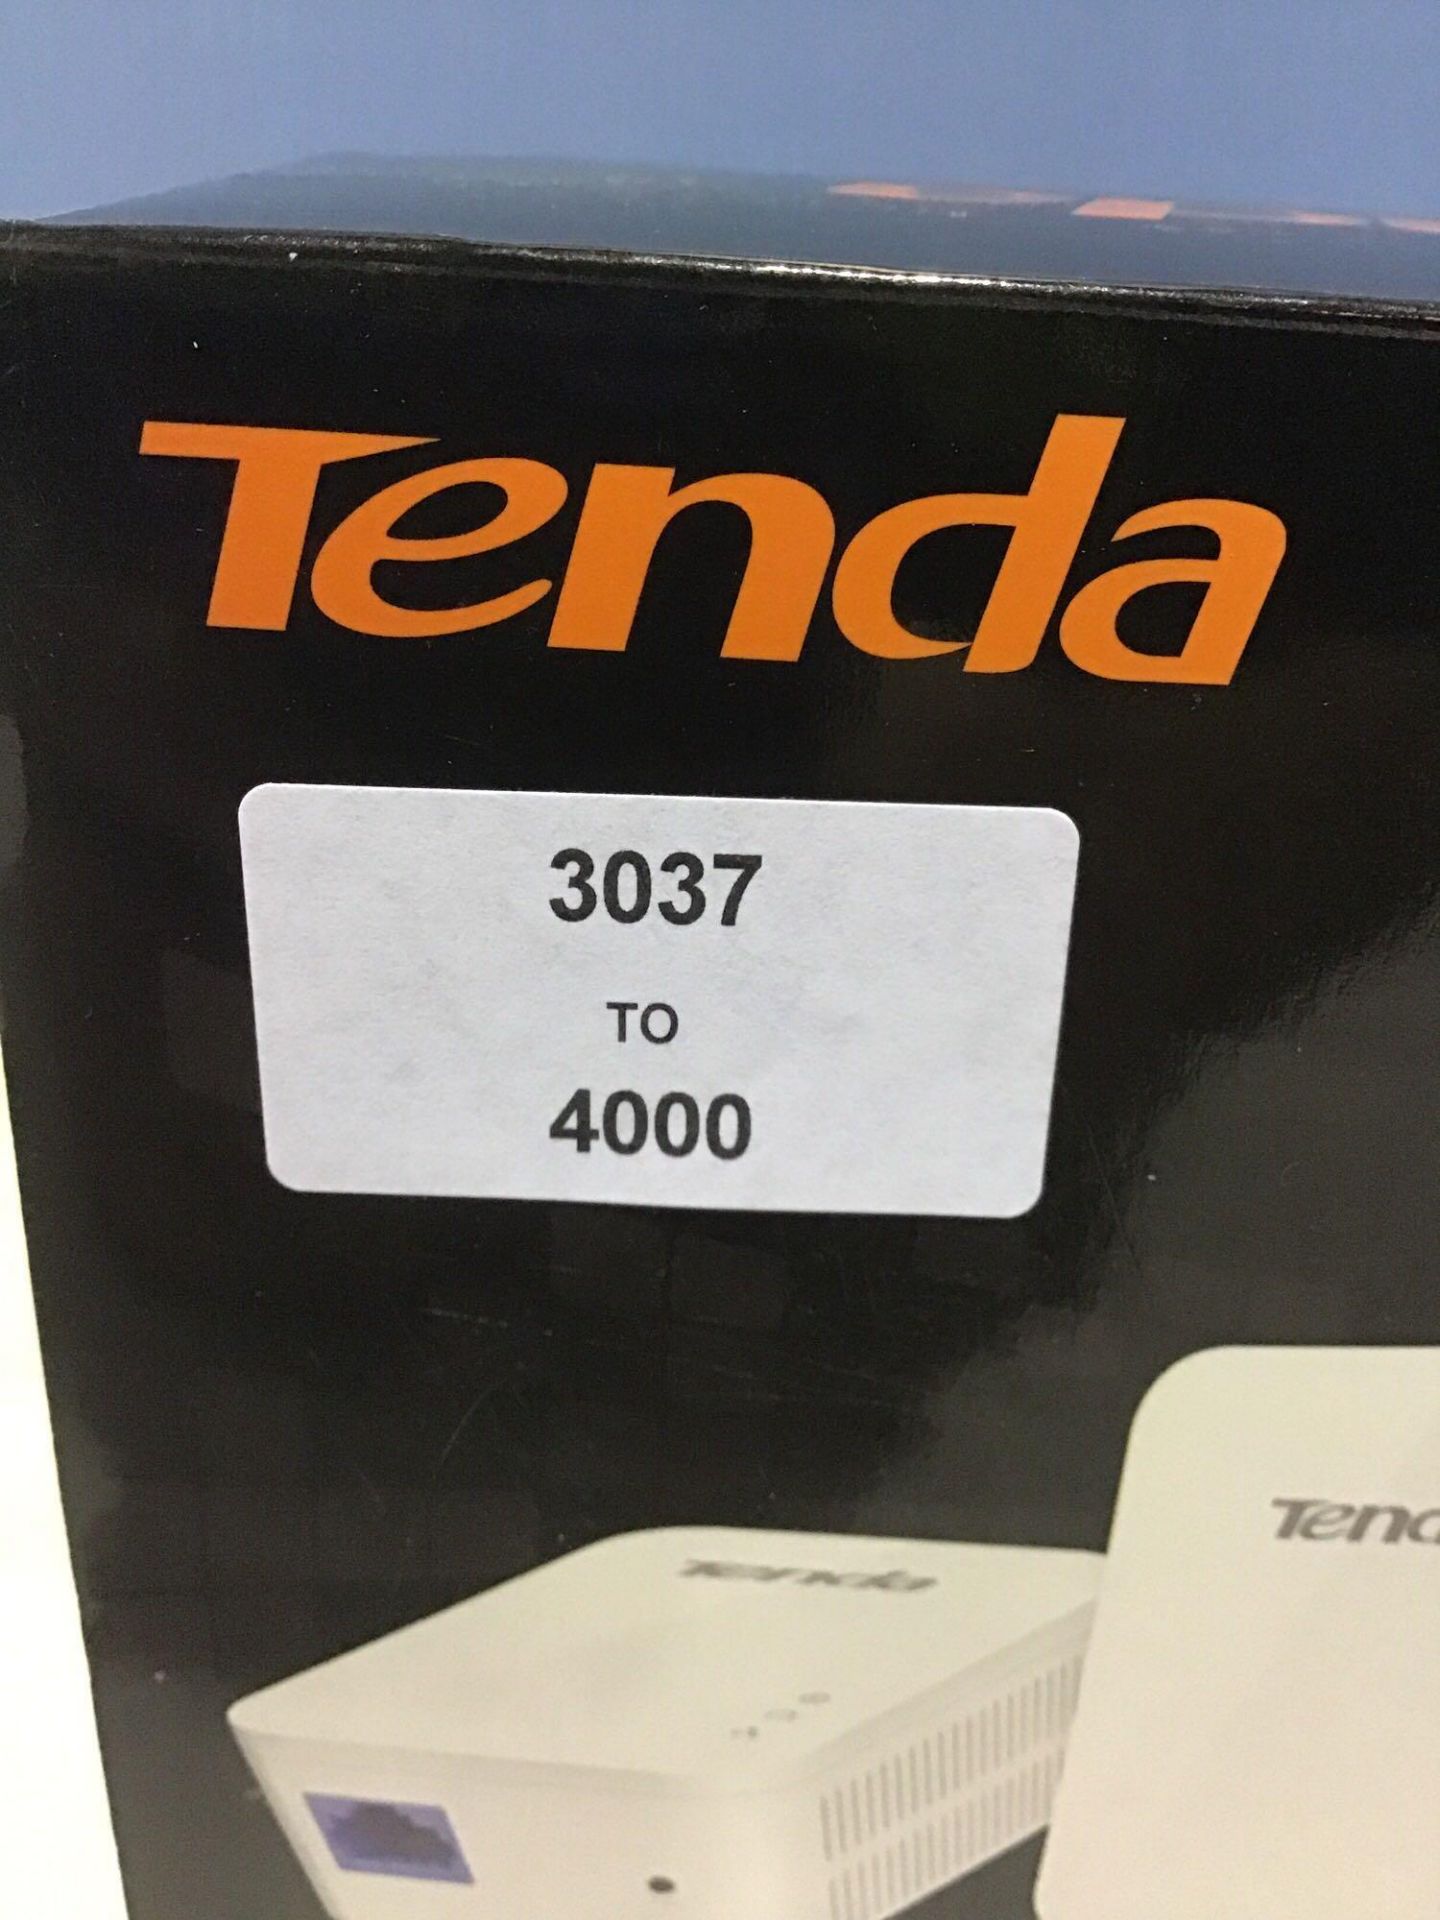 Tenda AV1000 1-Port Gigabit Powerline Adapter, Up to 1000Mbps (PH3),White - Image 5 of 5